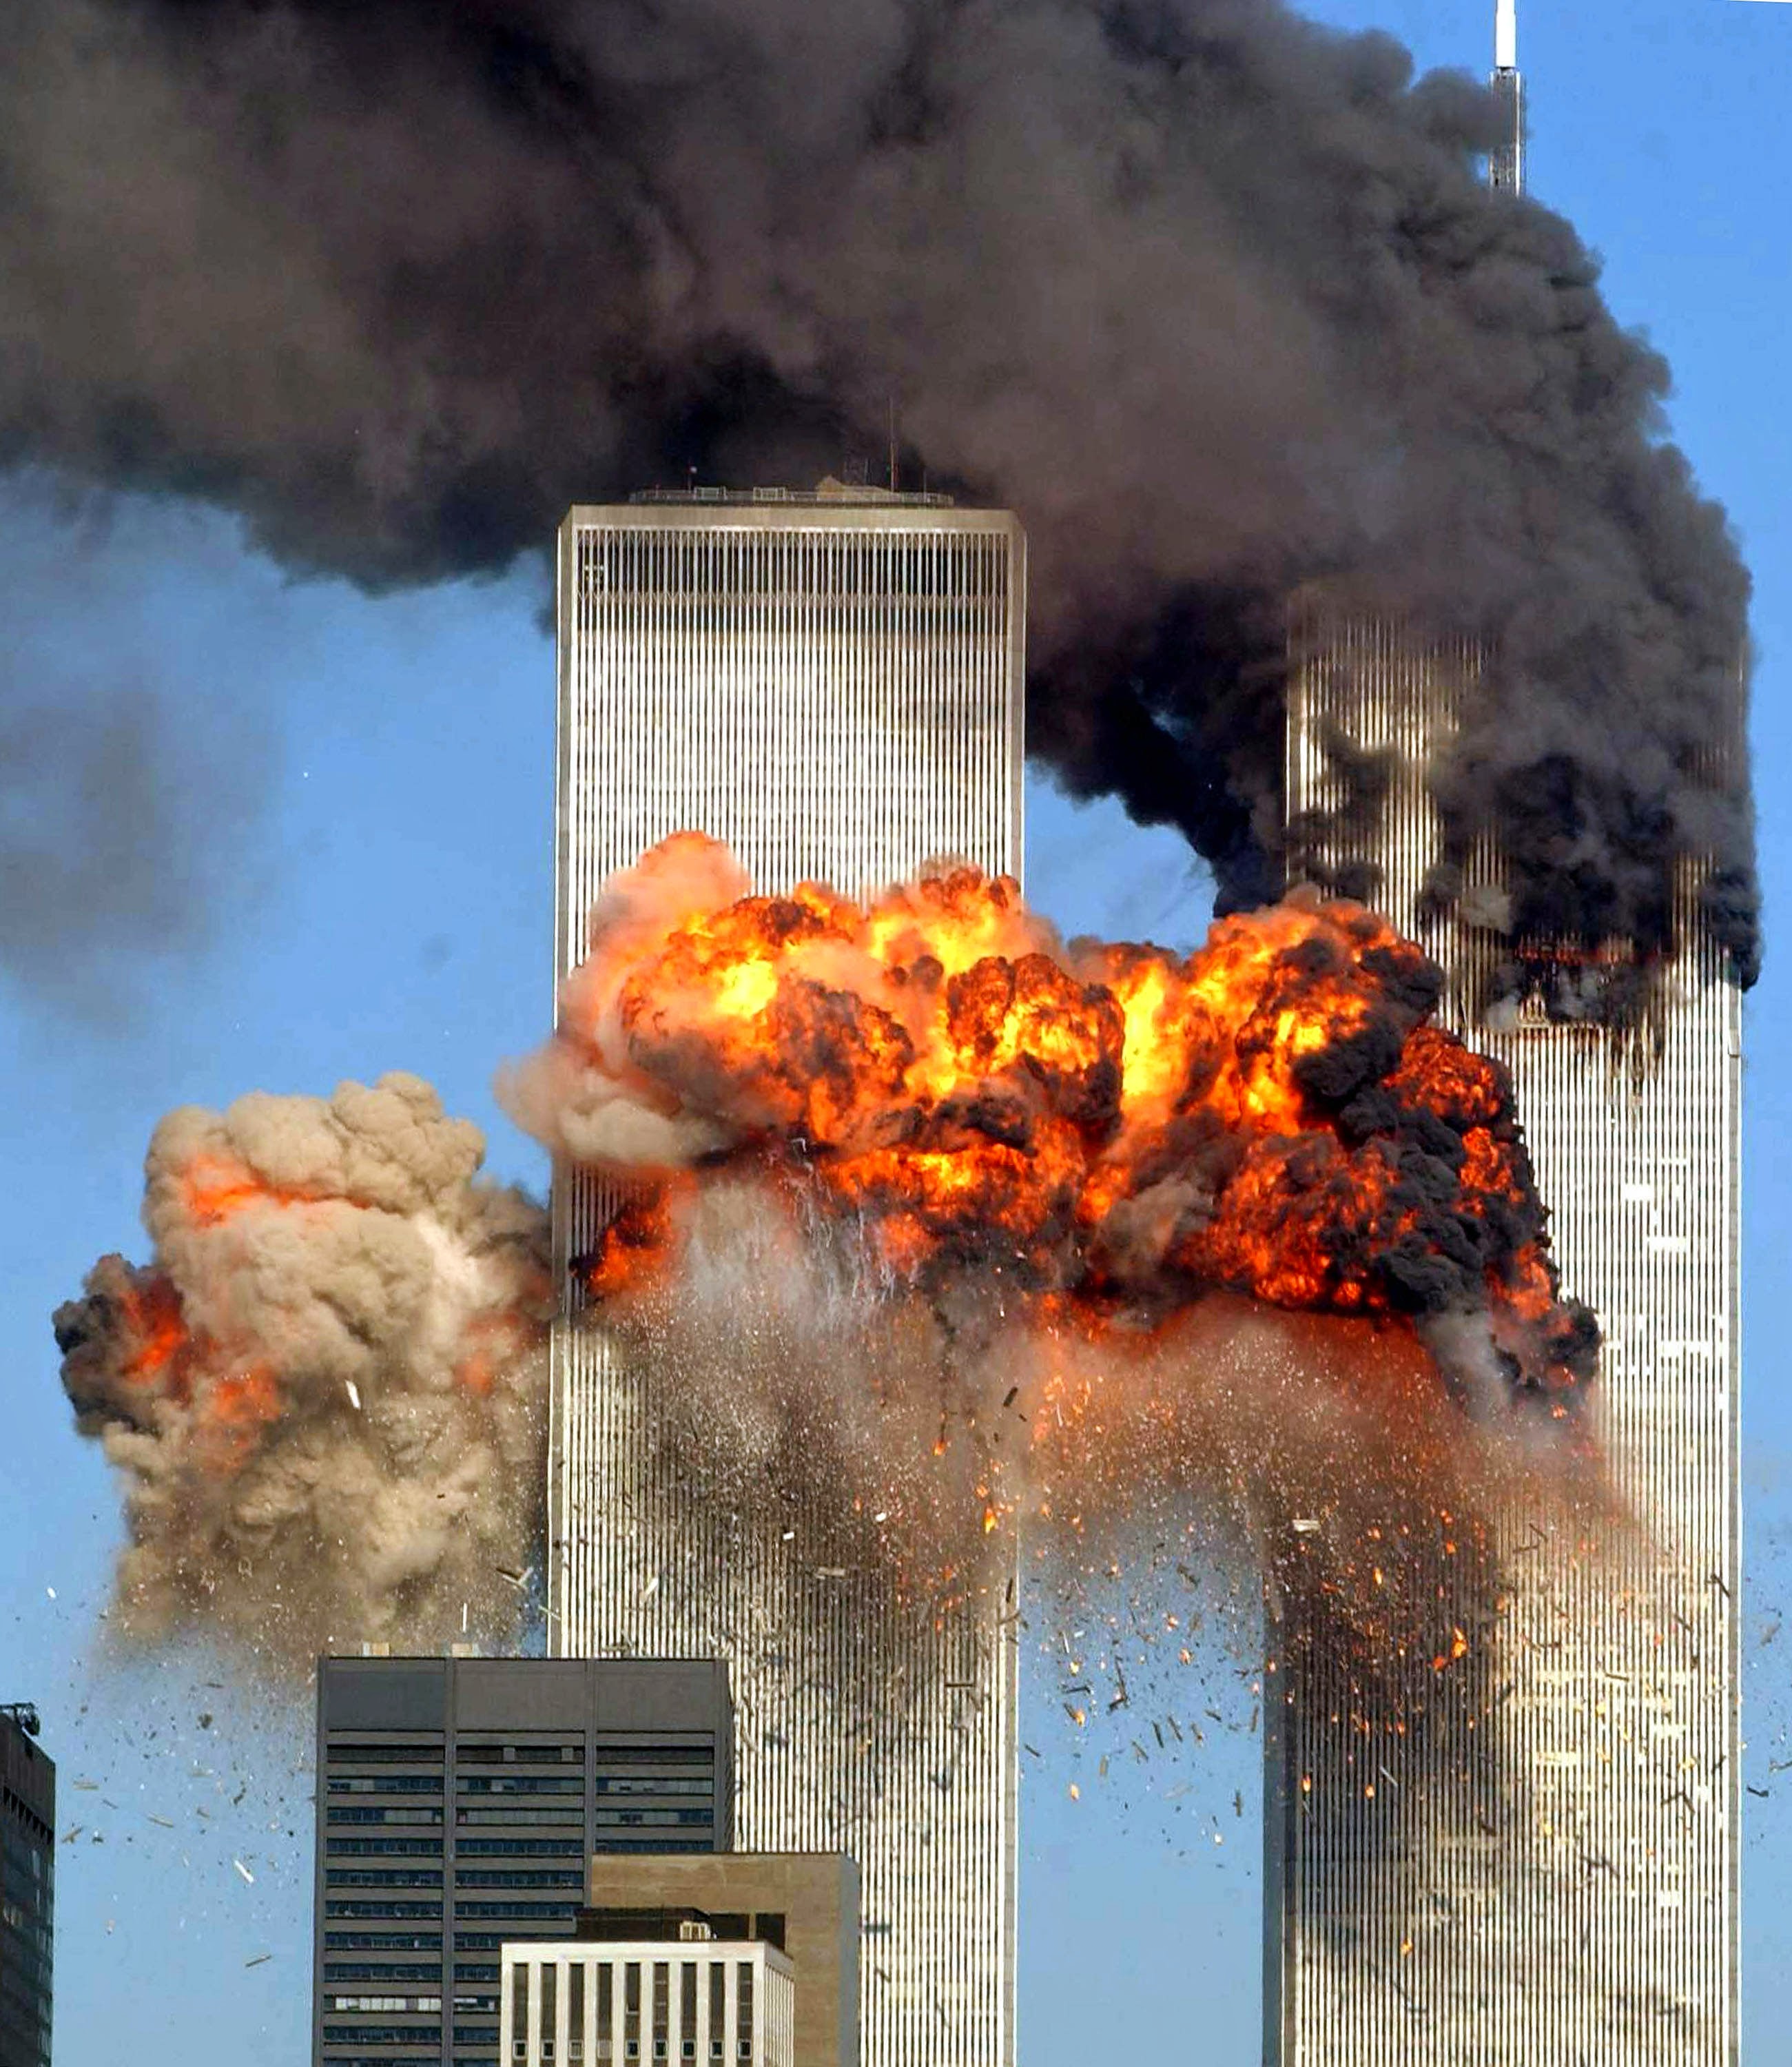 September 11, 2001 - New York, New York